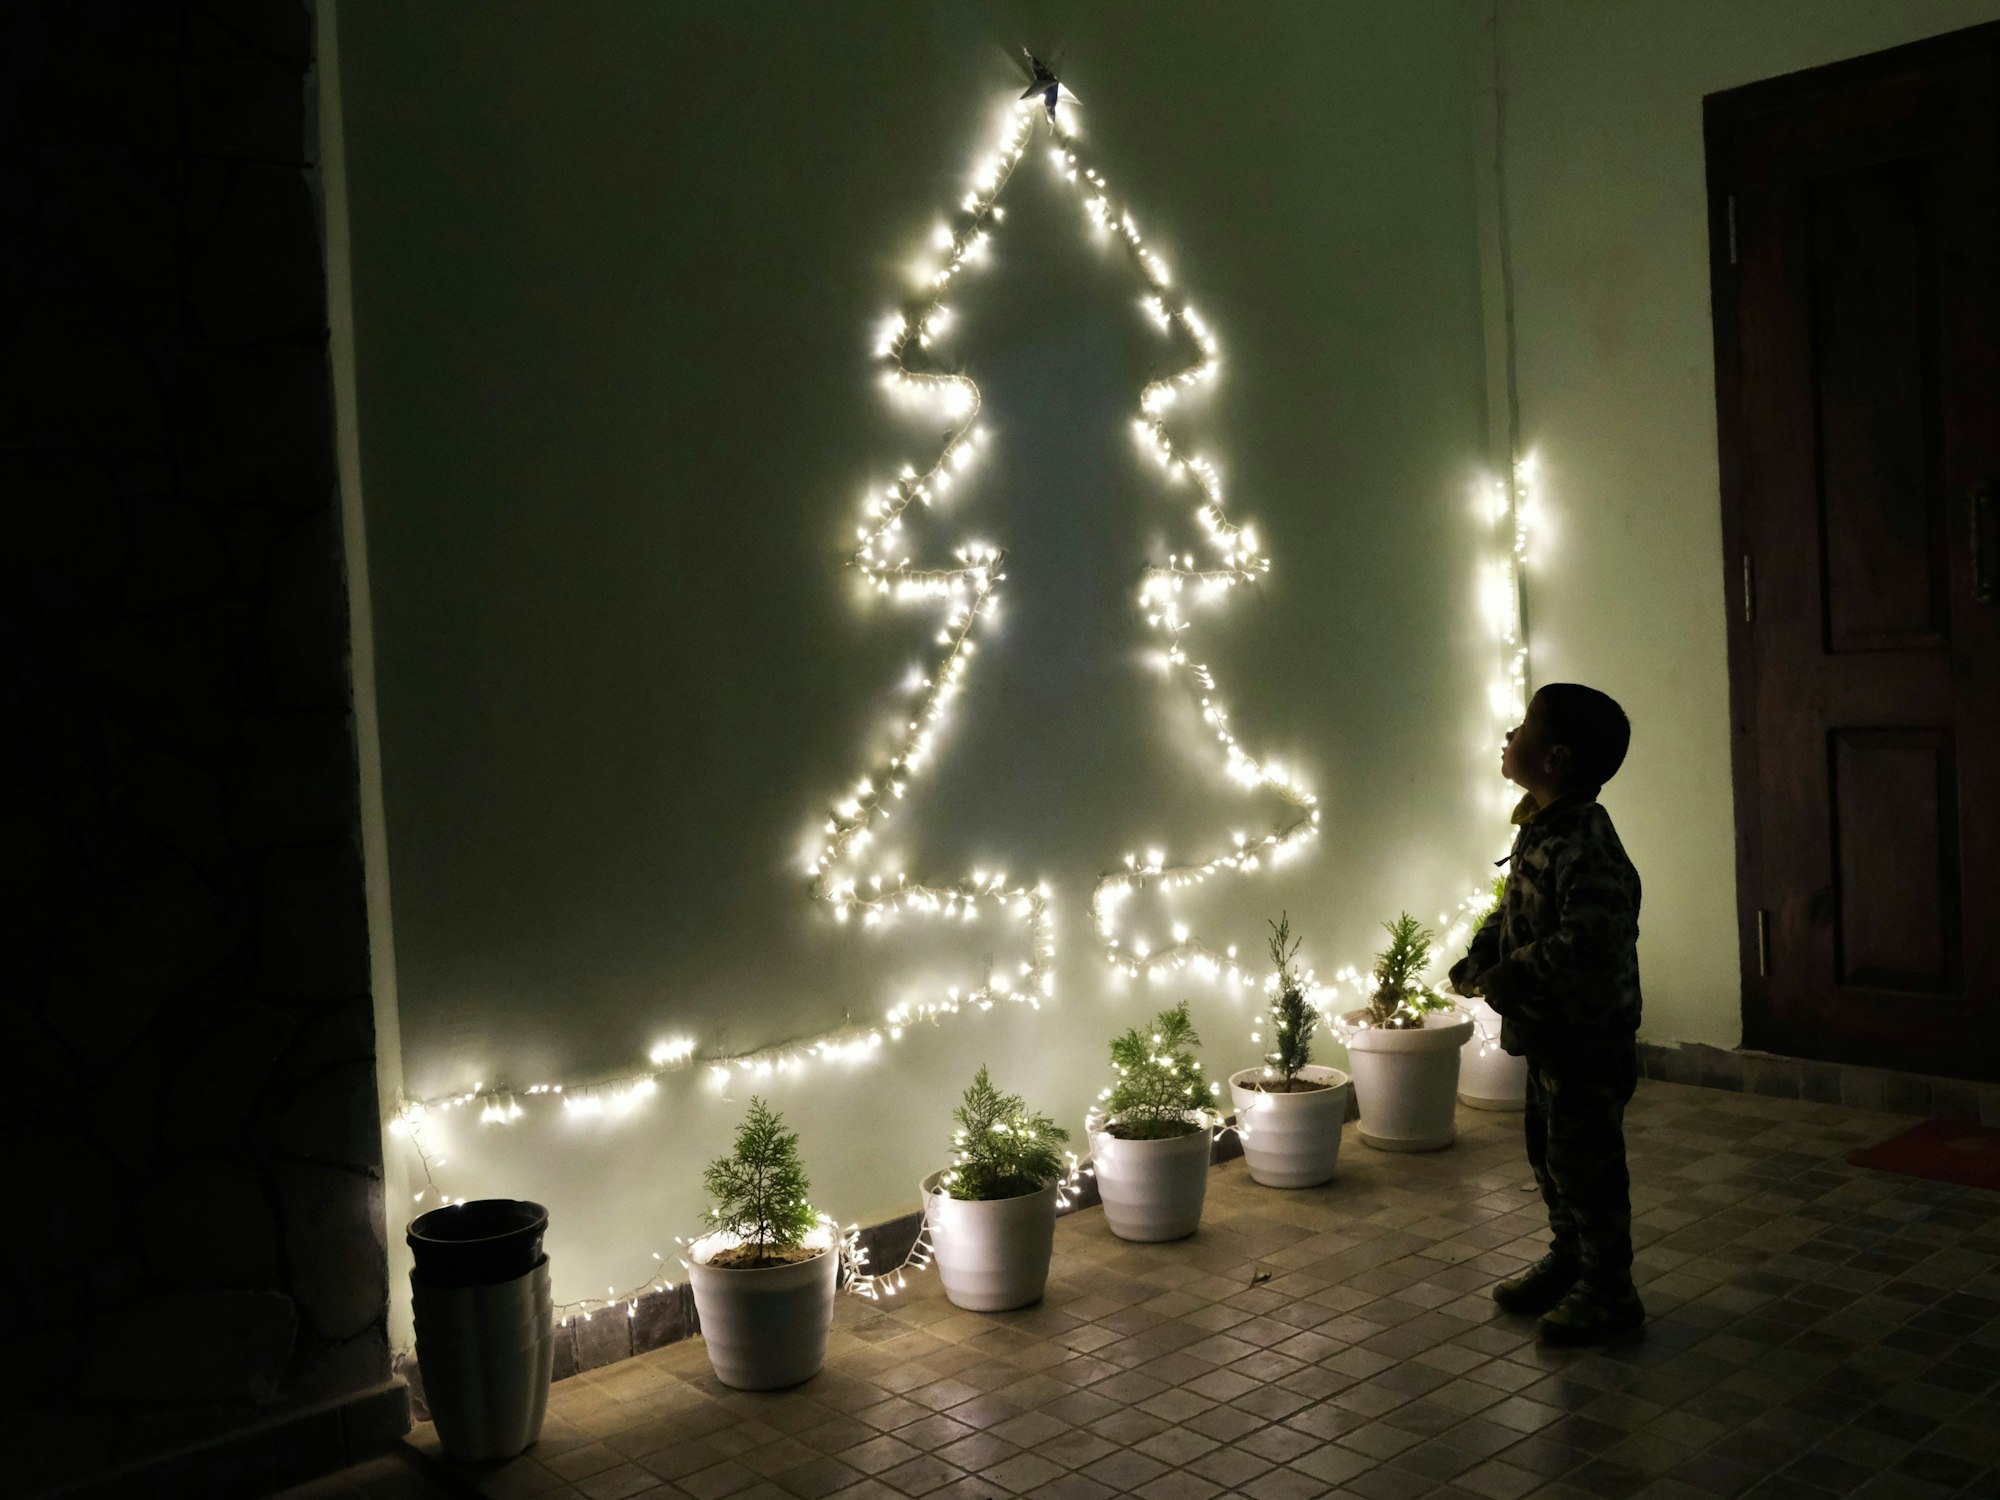 Ein Kind betrachtet an einer Wand eine Lichterkette in Form eines Weihnachtsbaumes.